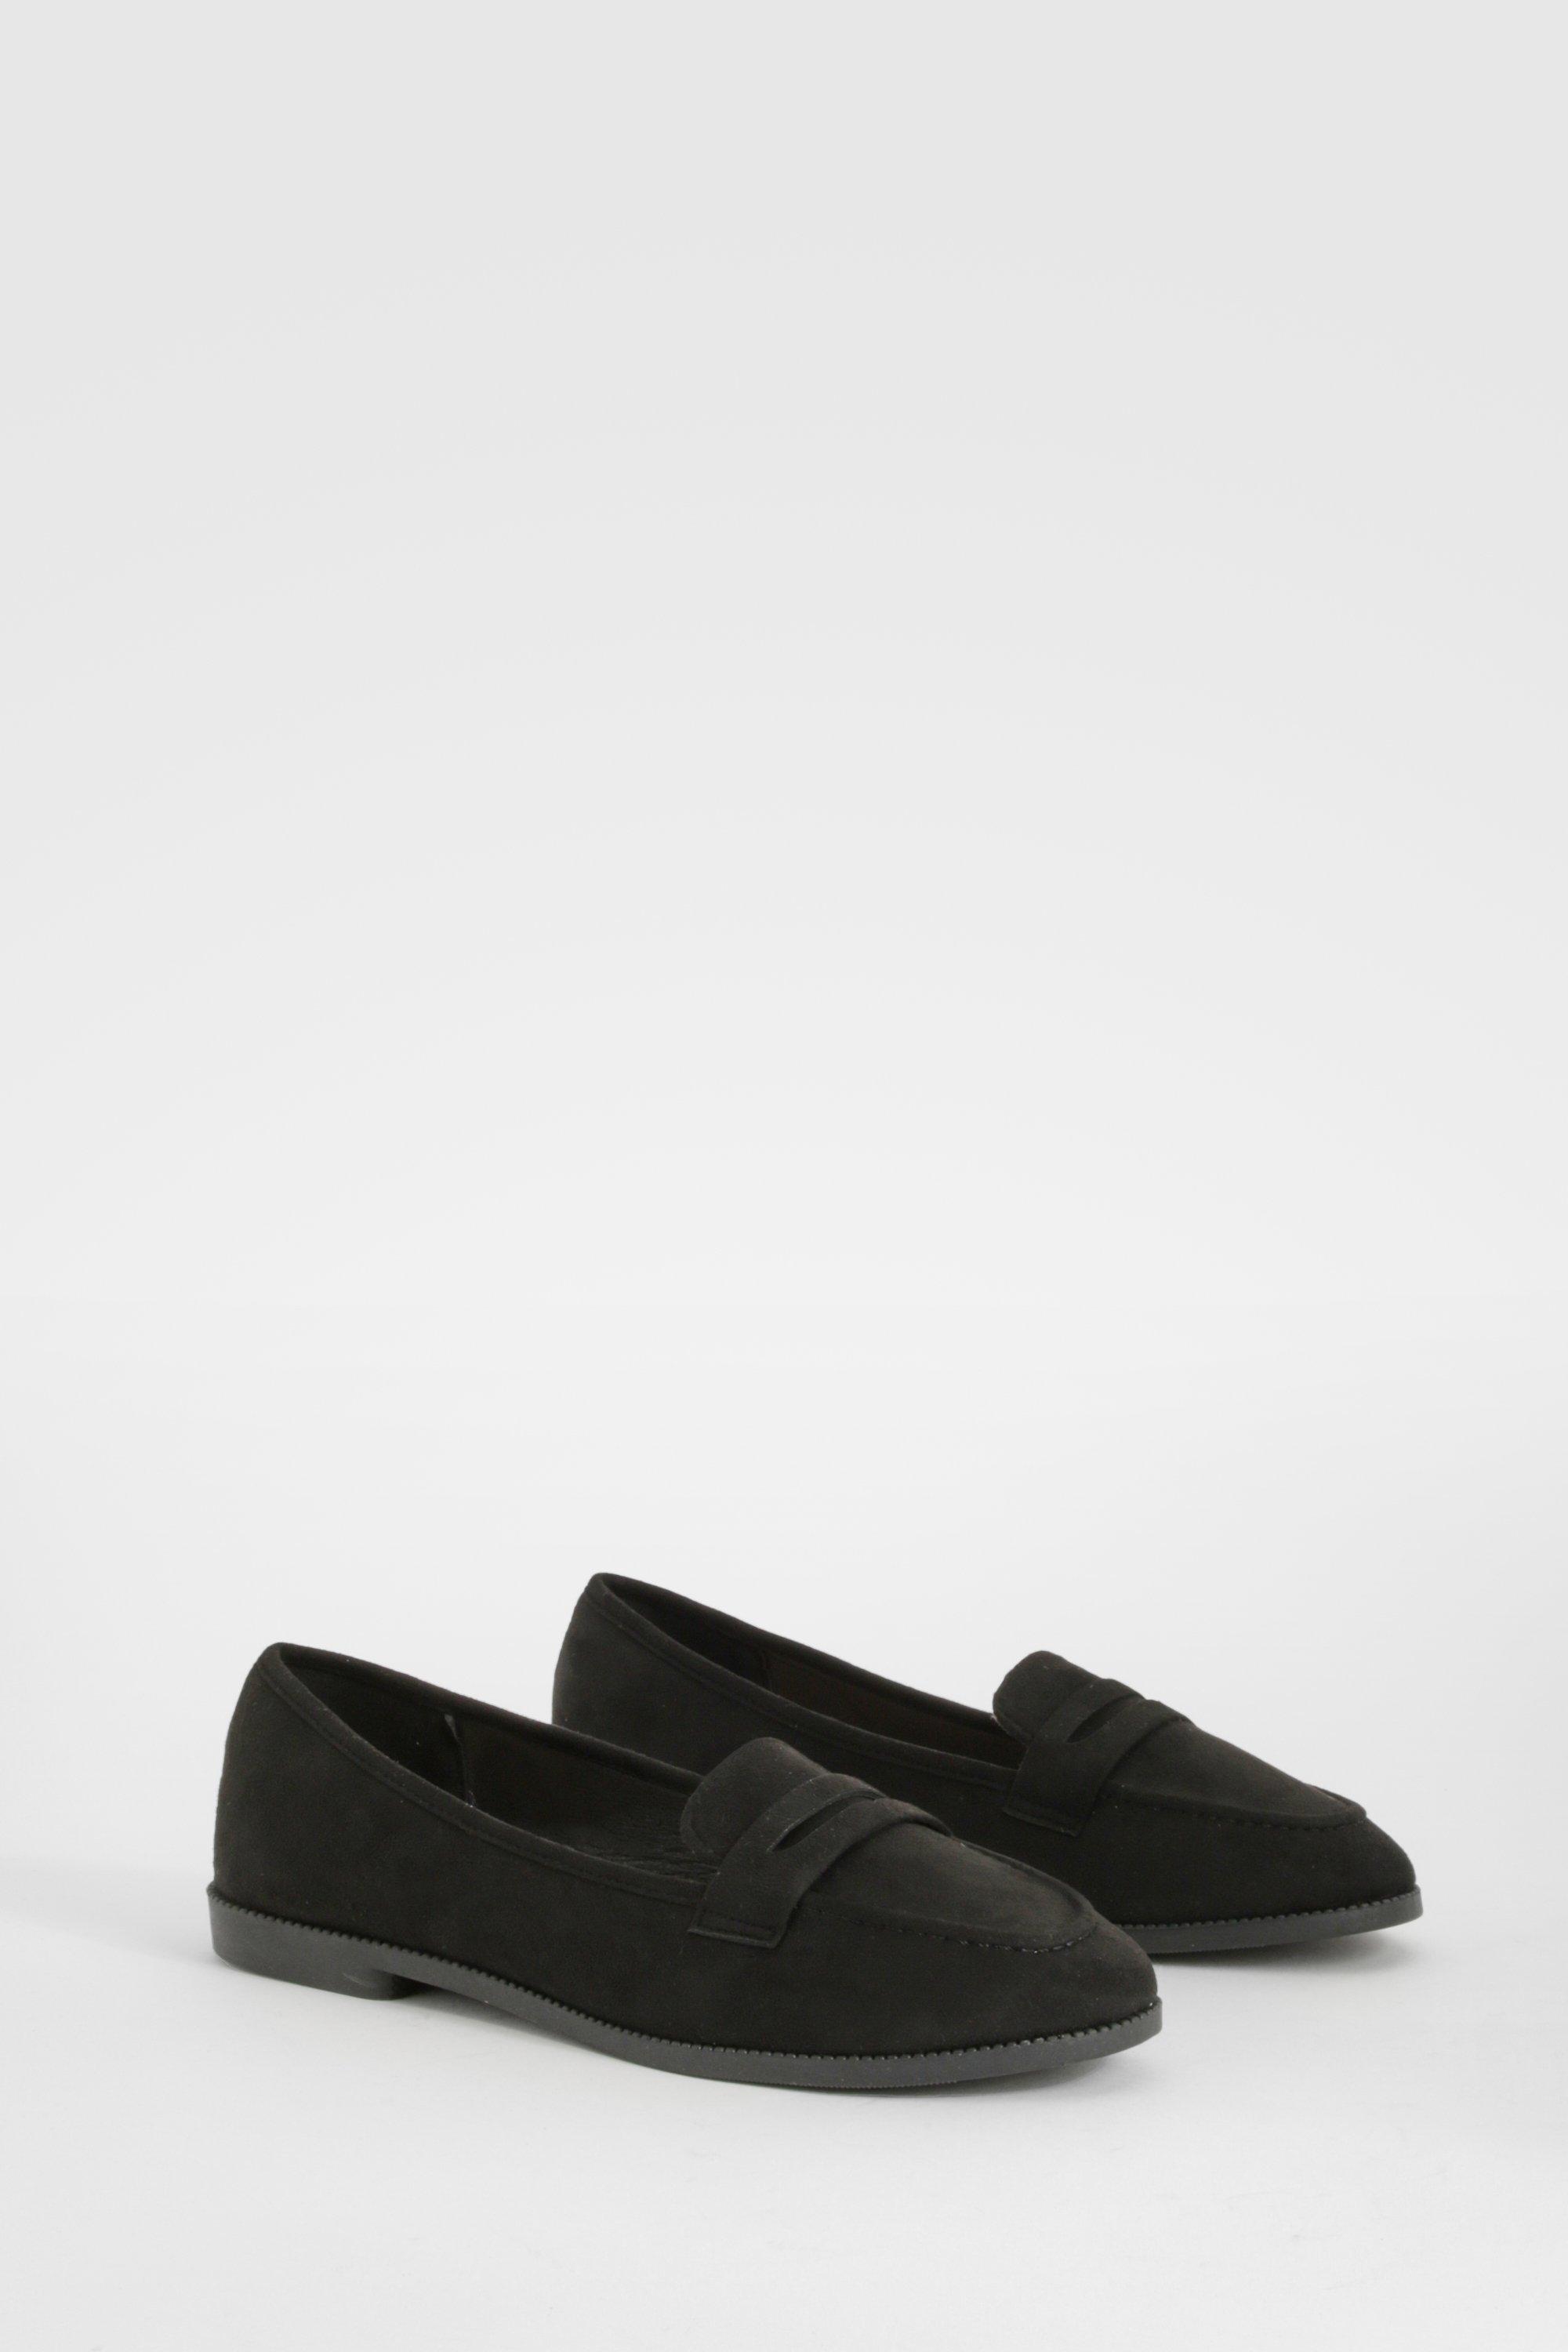 Image of Round Toe Basic Loafers, Nero